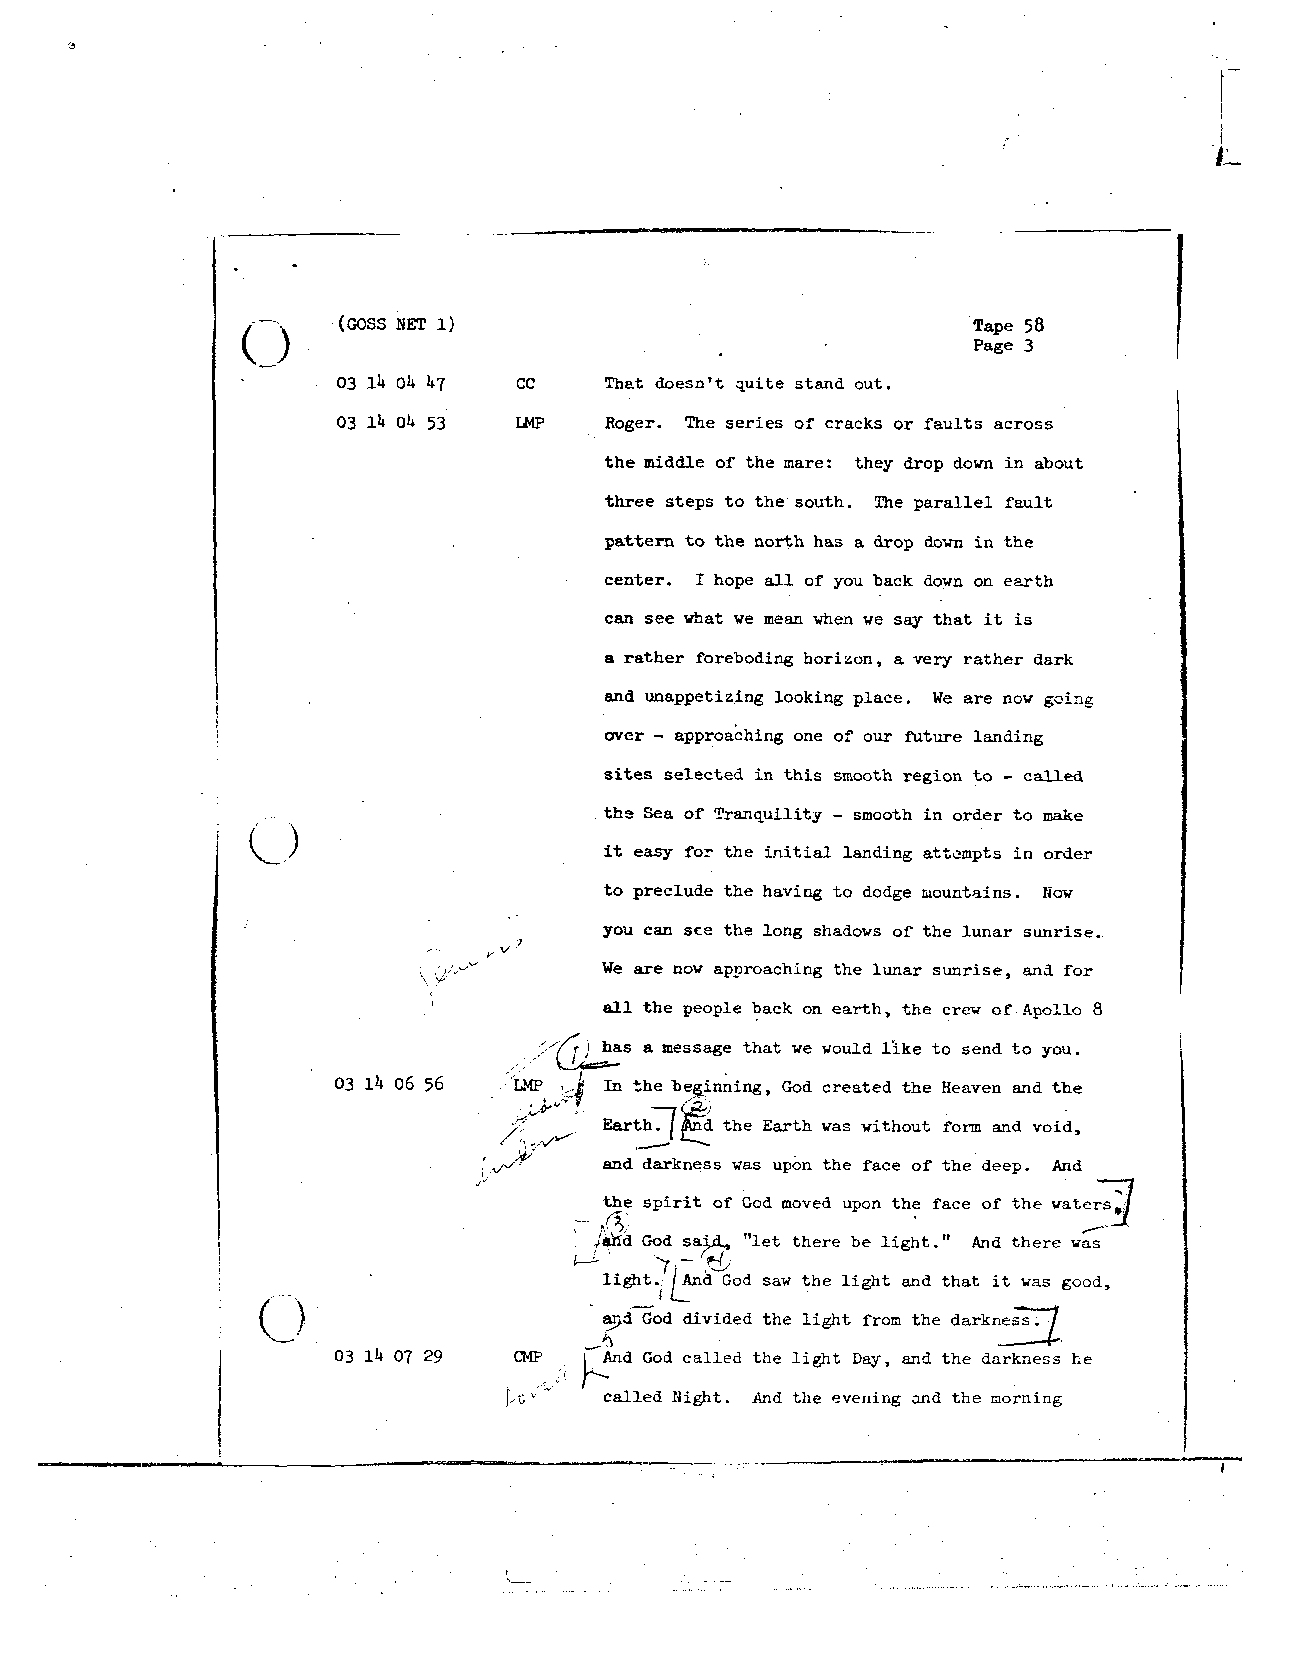 Page 462 of Apollo 8’s original transcript